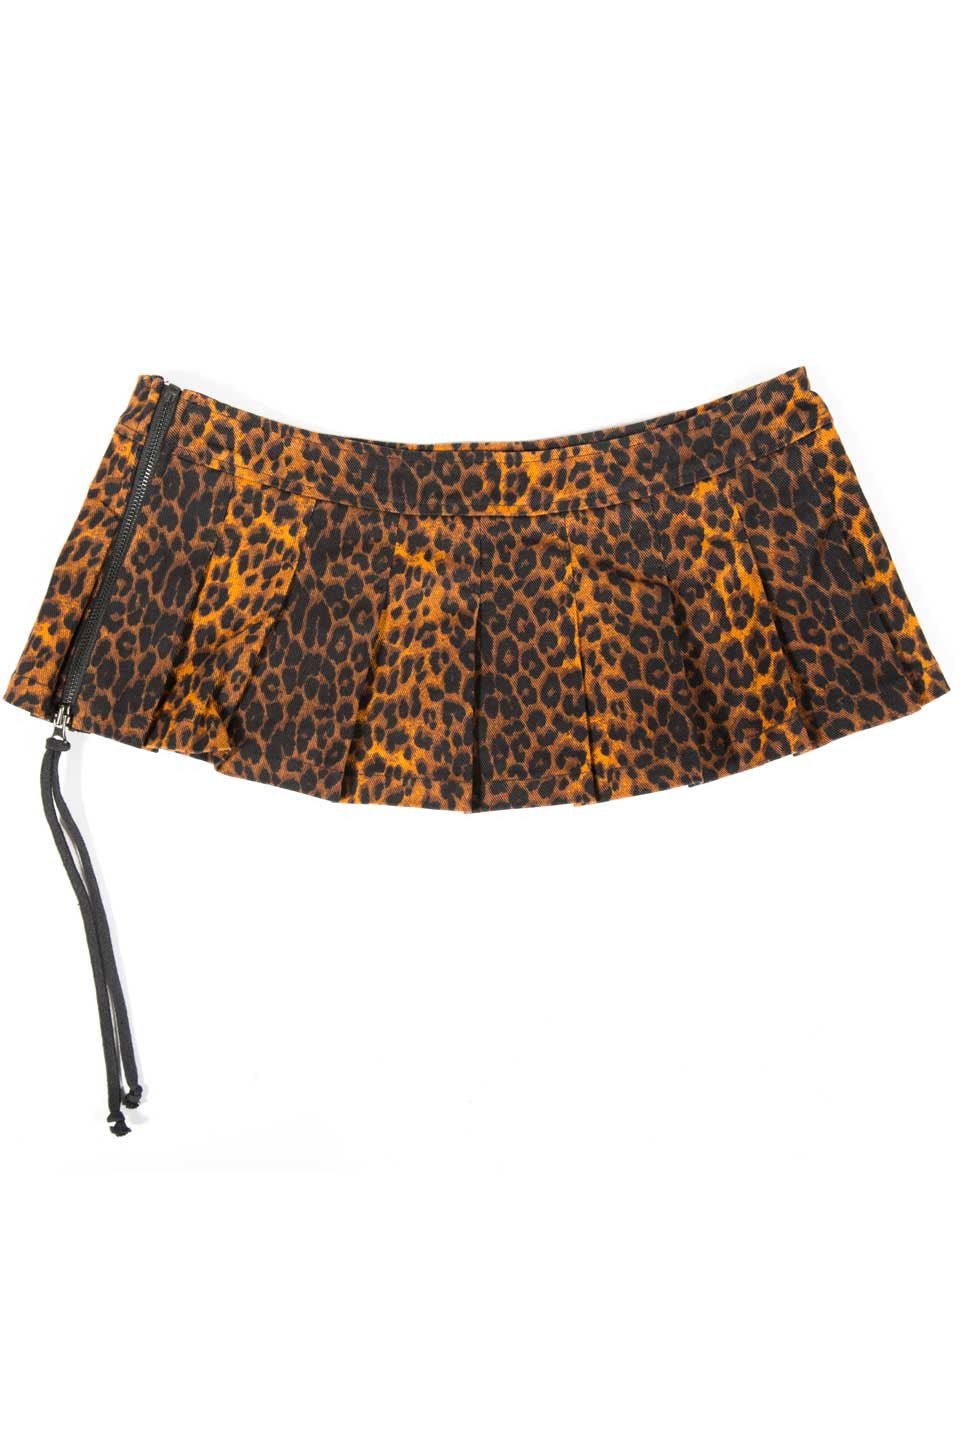 Vintage Leopard Pleated Micro Mini Skirt-Skirts-Lip Service